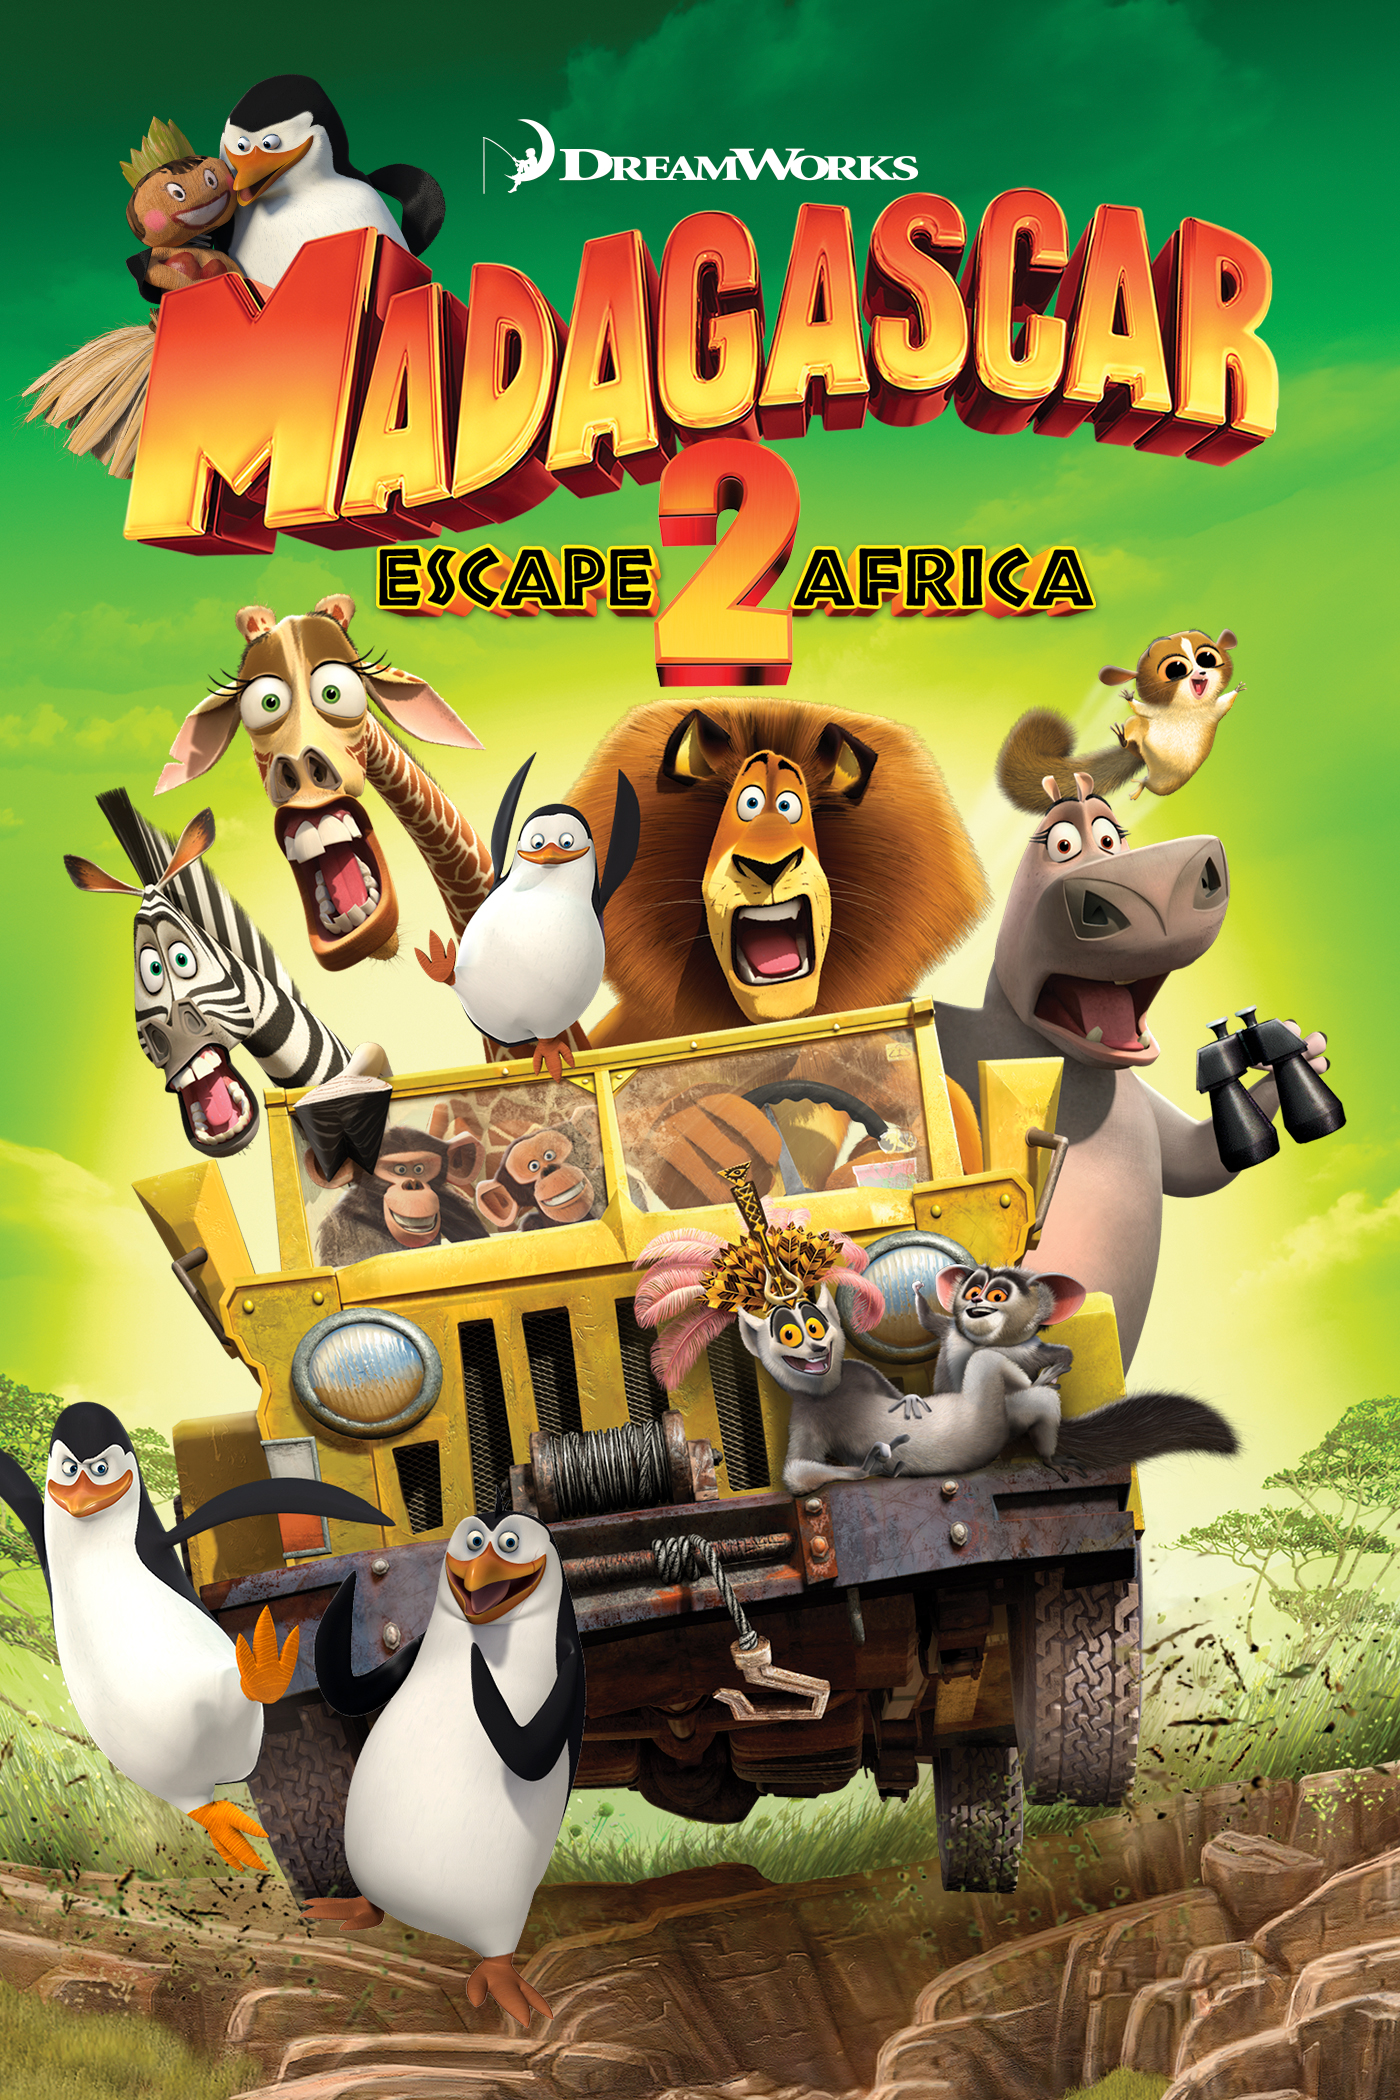 Madagascar Escape 2 Africa Home Video Dreamworks